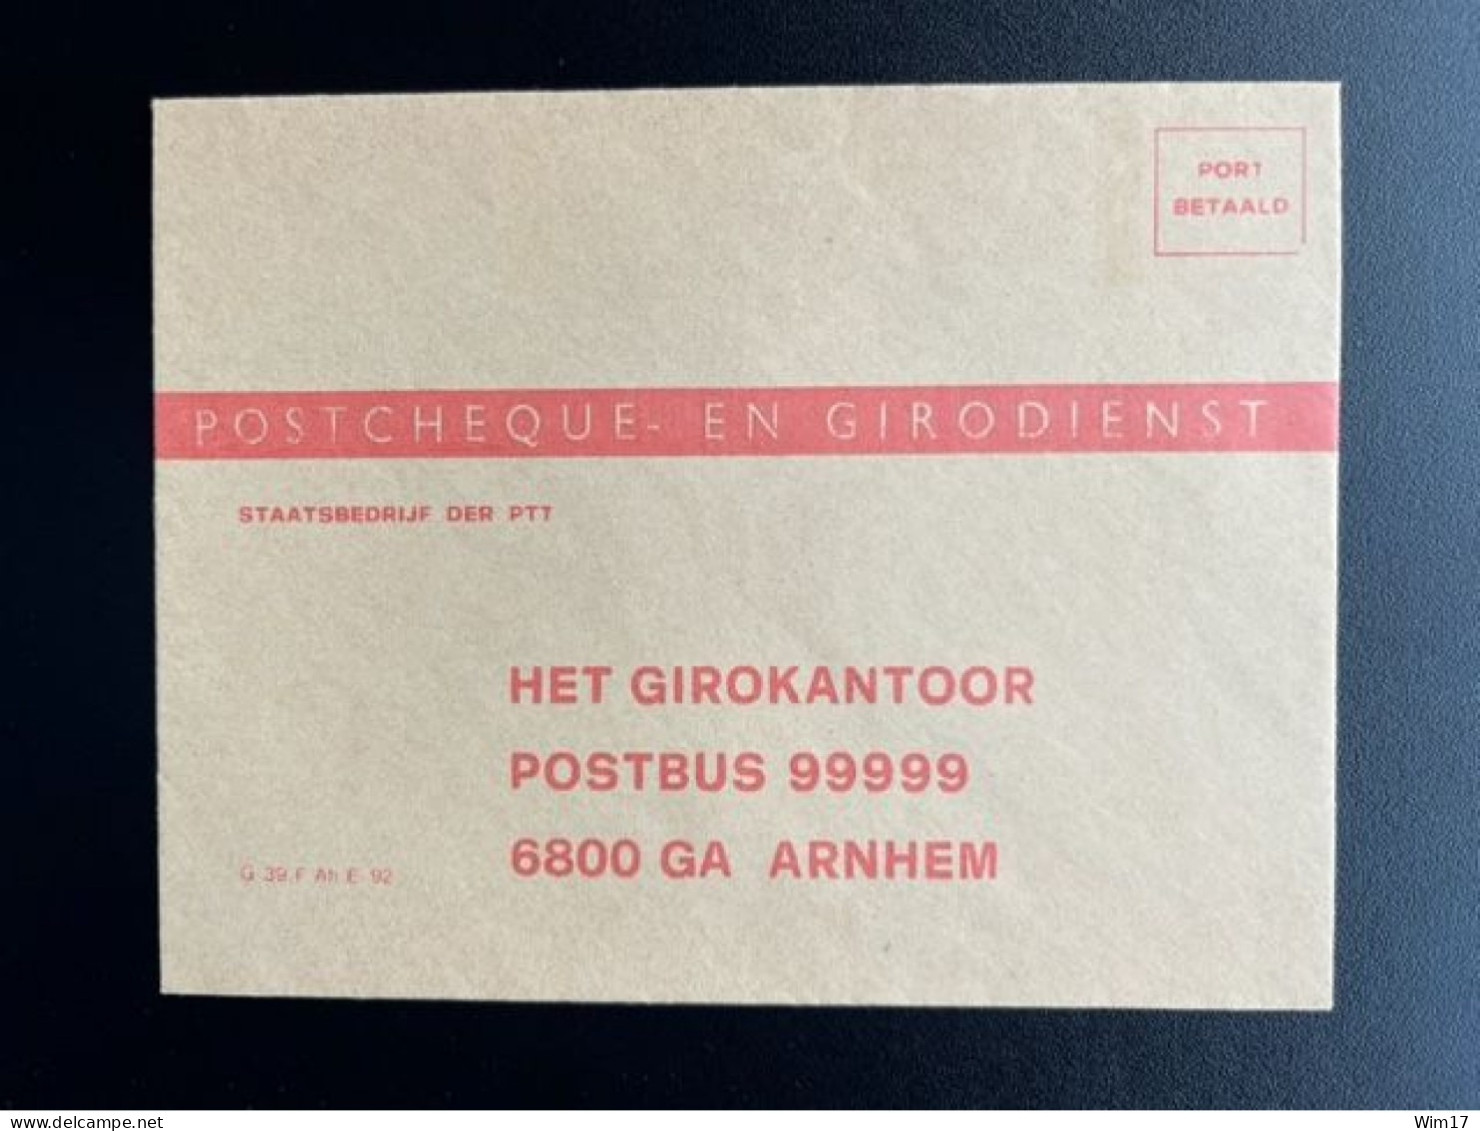 NETHERLANDS 19?? UNUSED ENVELOPE POSTCHEQUE- EN GIRODIENST NEDERLAND G 39 F AH E 92 - Cartas & Documentos